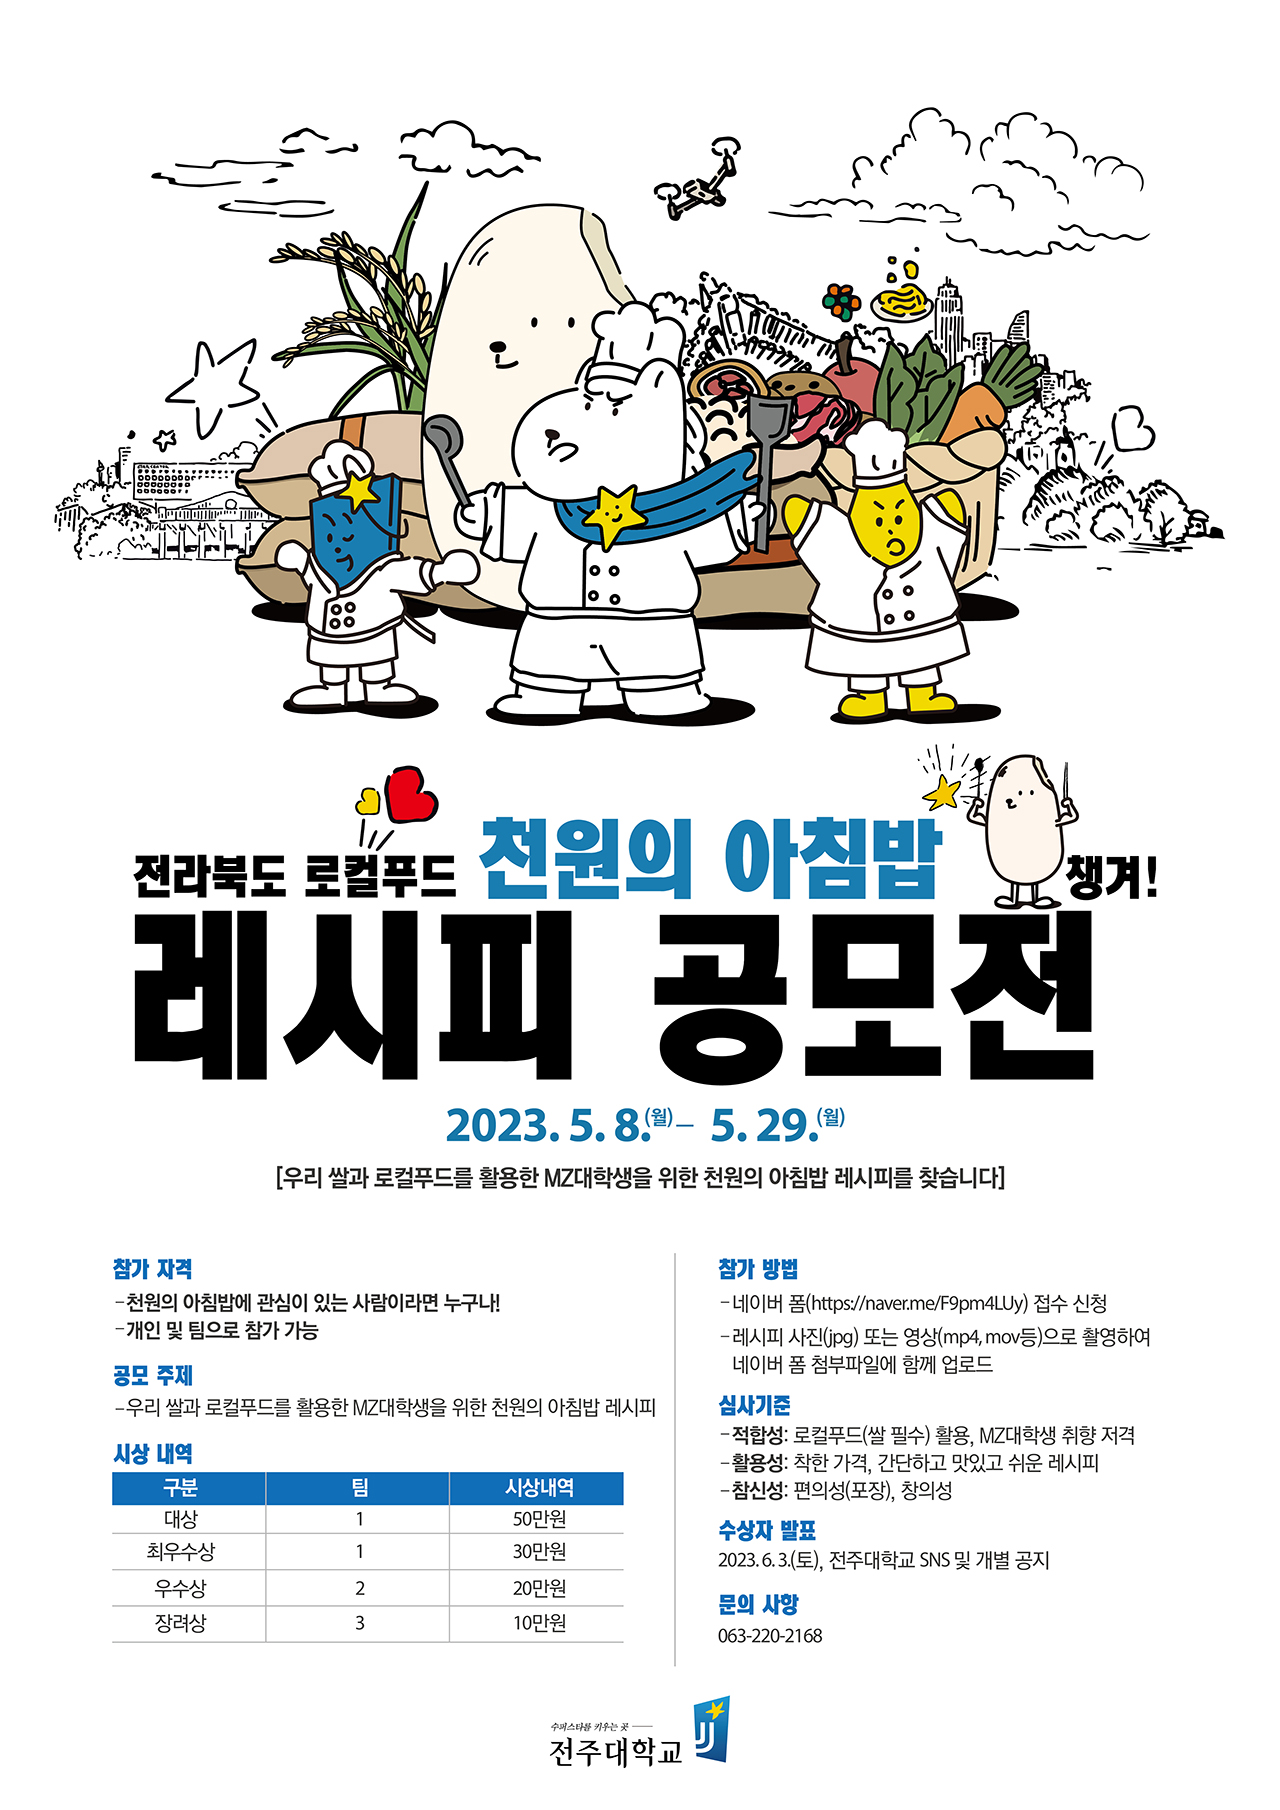  사진)전주대, MZ대학생 취향저격 천원의 아침밥 레시피 공모전 개최 (1).jpg